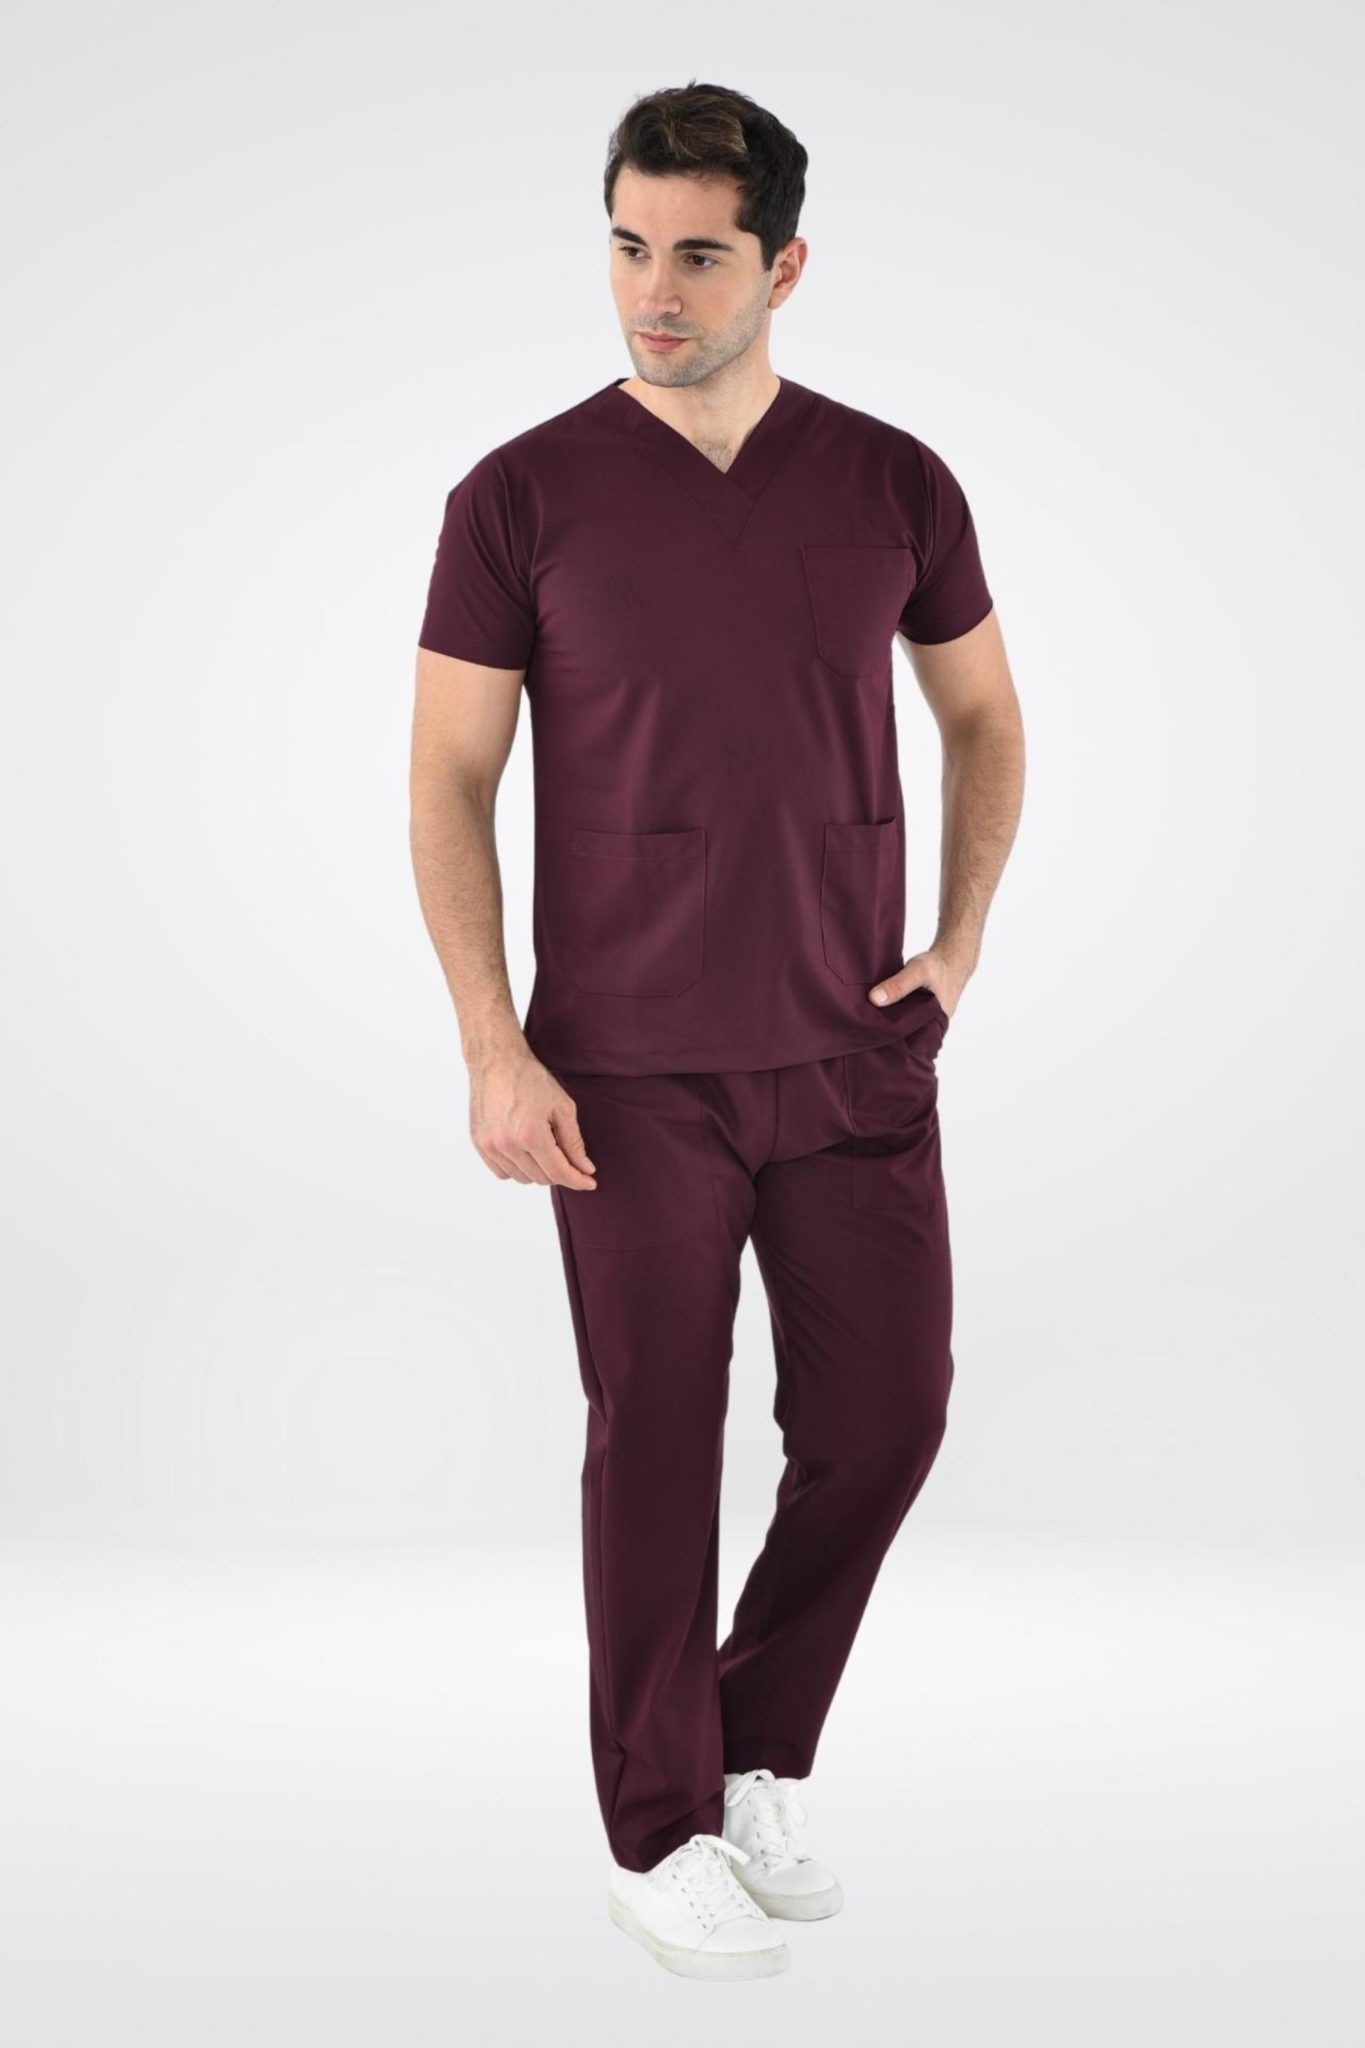 Homme en tunique médicale bordeaux confortable, uniformes de tenues médicales